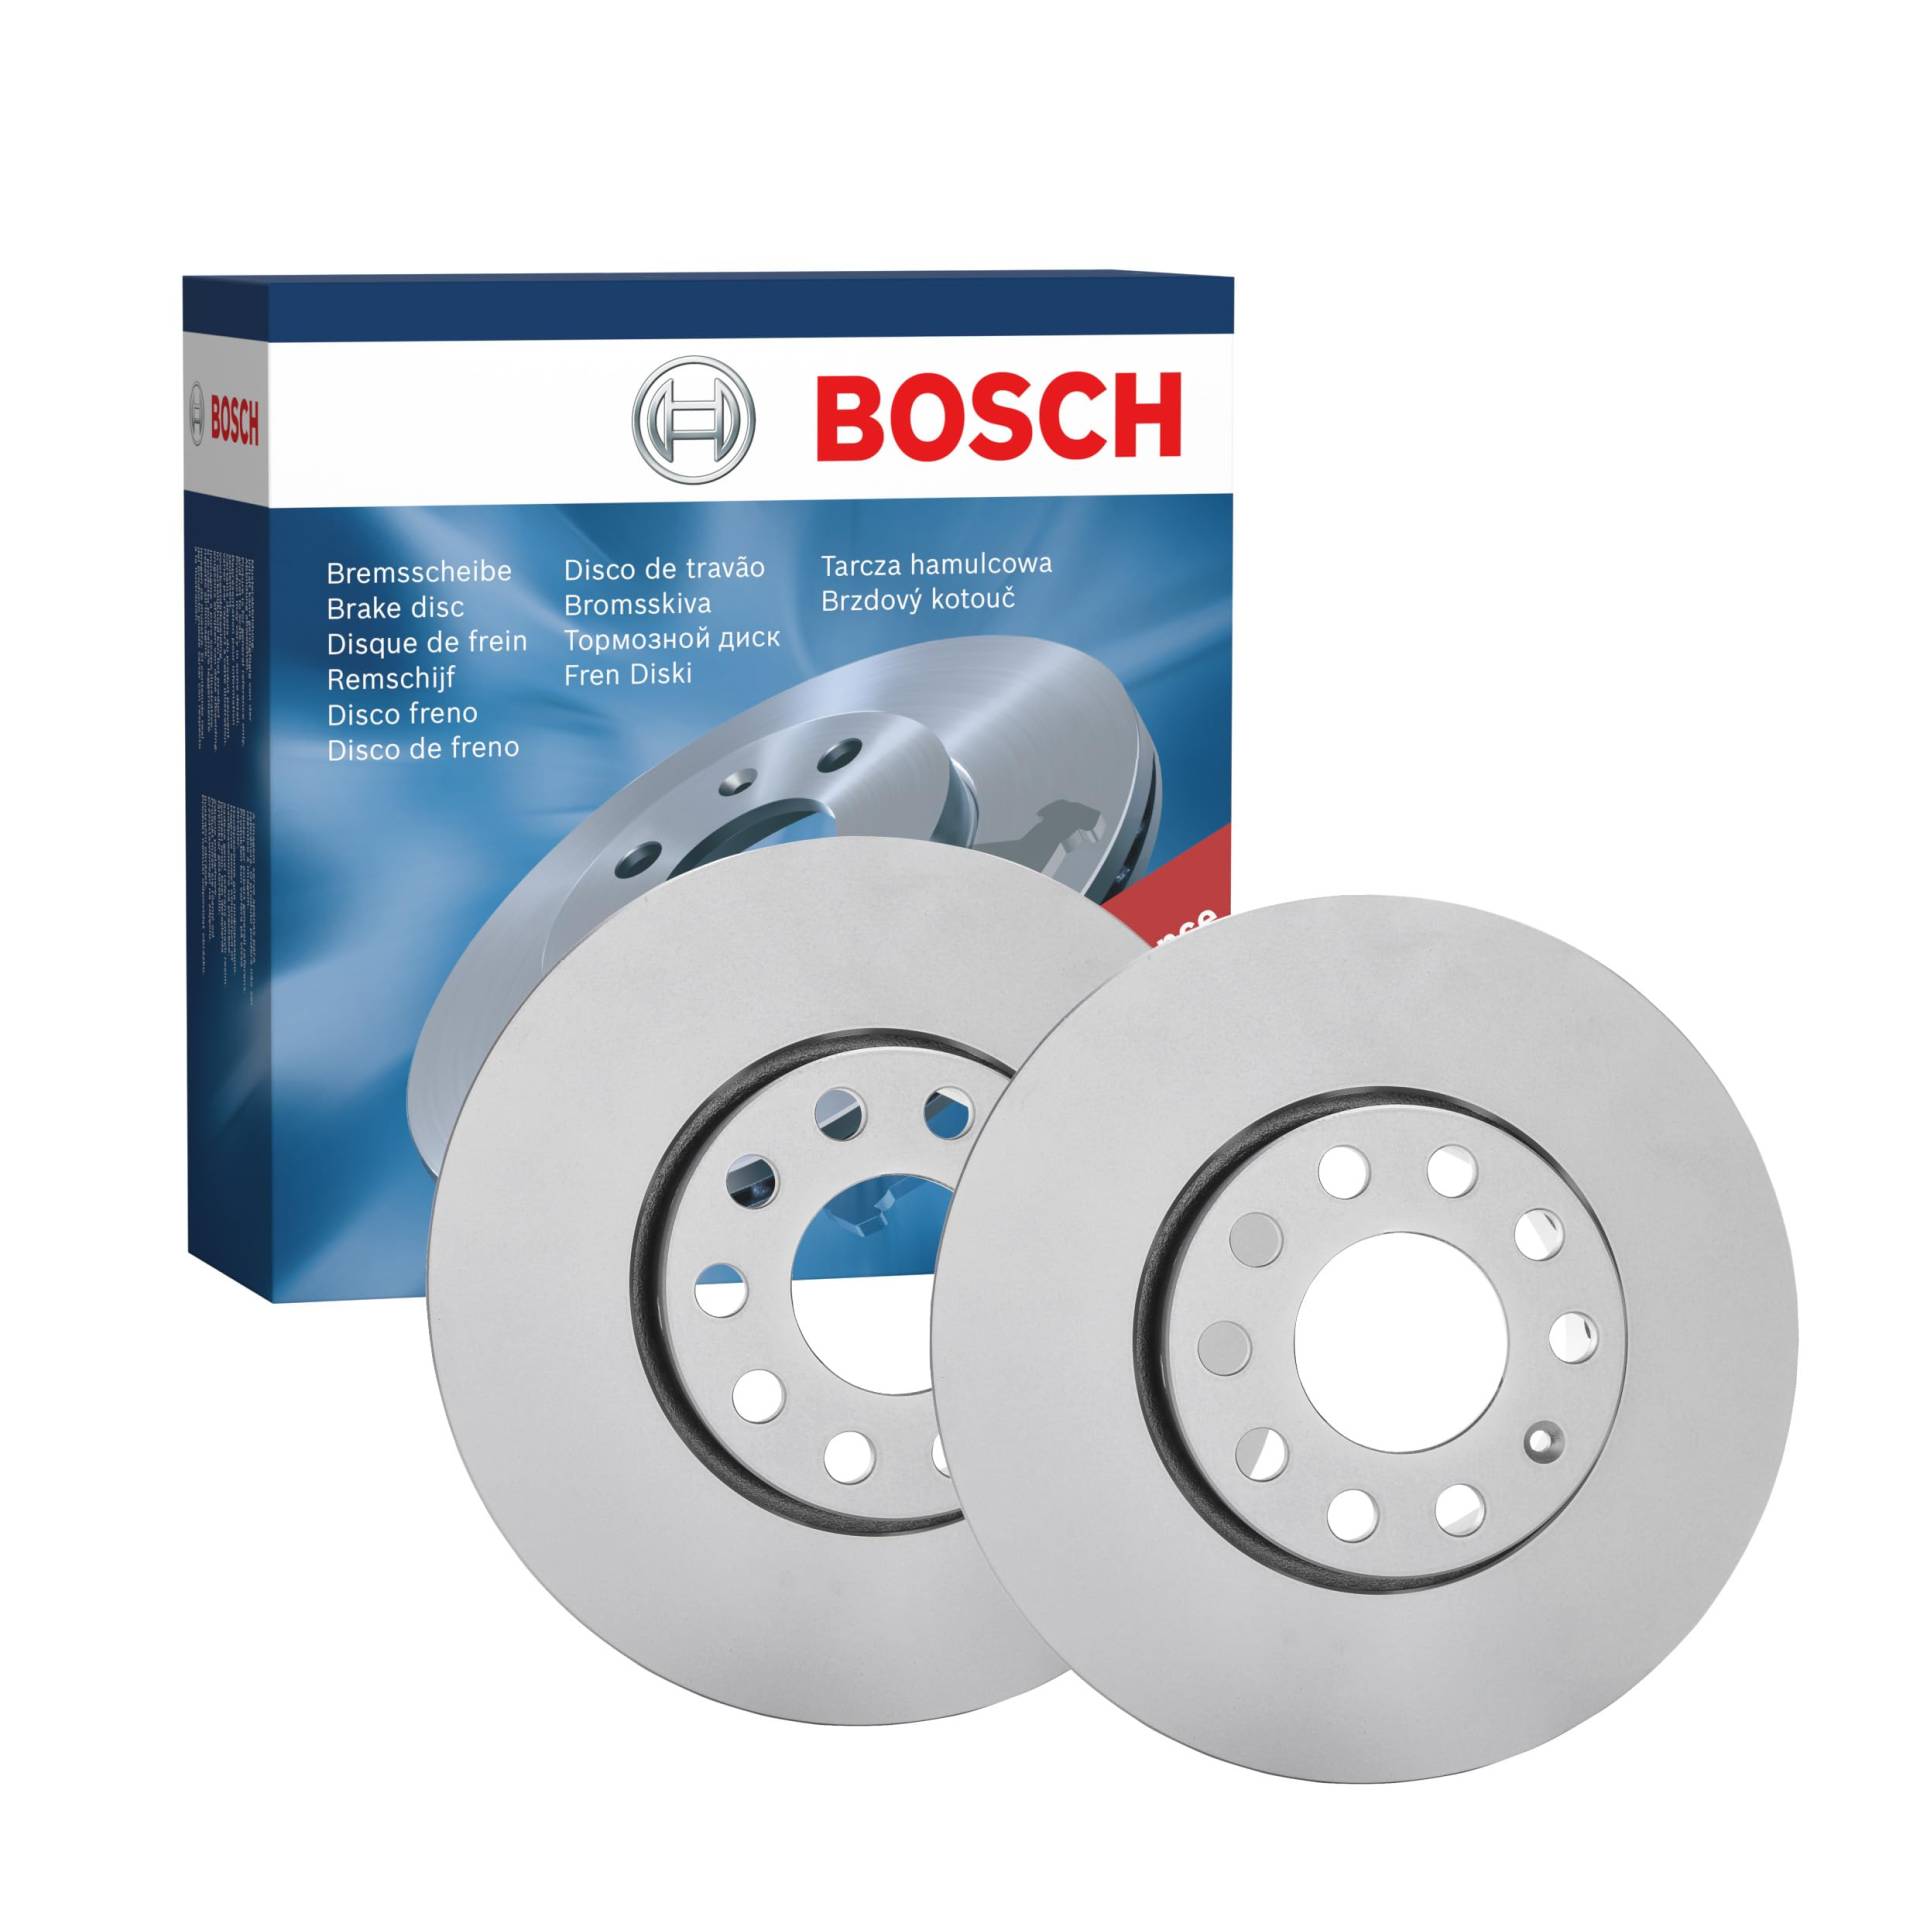 Bosch BD468 Bremsscheiben - Vorderachse - ECE-R90 Zertifizierung - zwei Bremsscheiben pro Set von Bosch Automotive